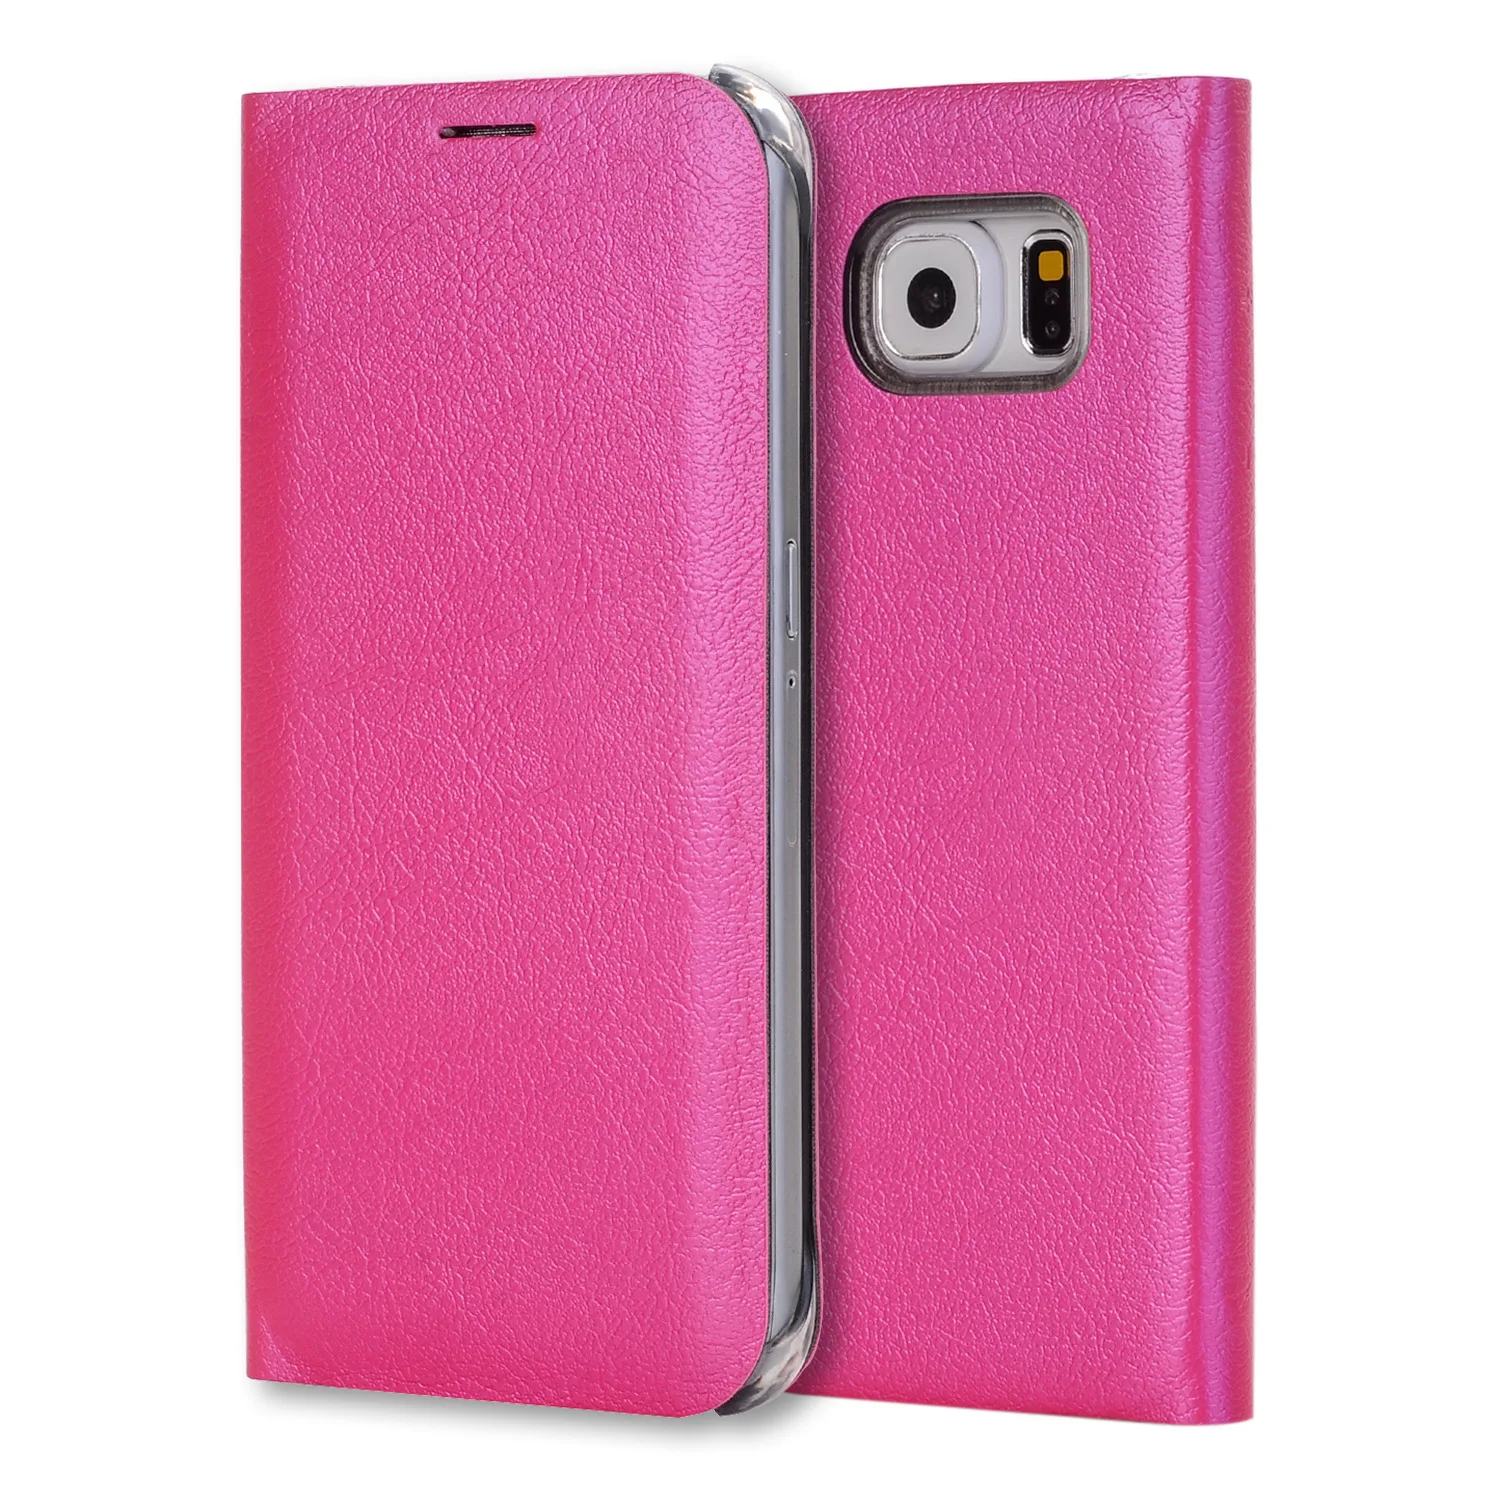 Кожаный держатель для карт бумажник флип чехол КРЫШКА ДЛЯ samsung Galaxy A7 A6 A8 A9 A3 A5 J3 J5 J7 S9 S8 плюс S7 край - Цвет: Розовый